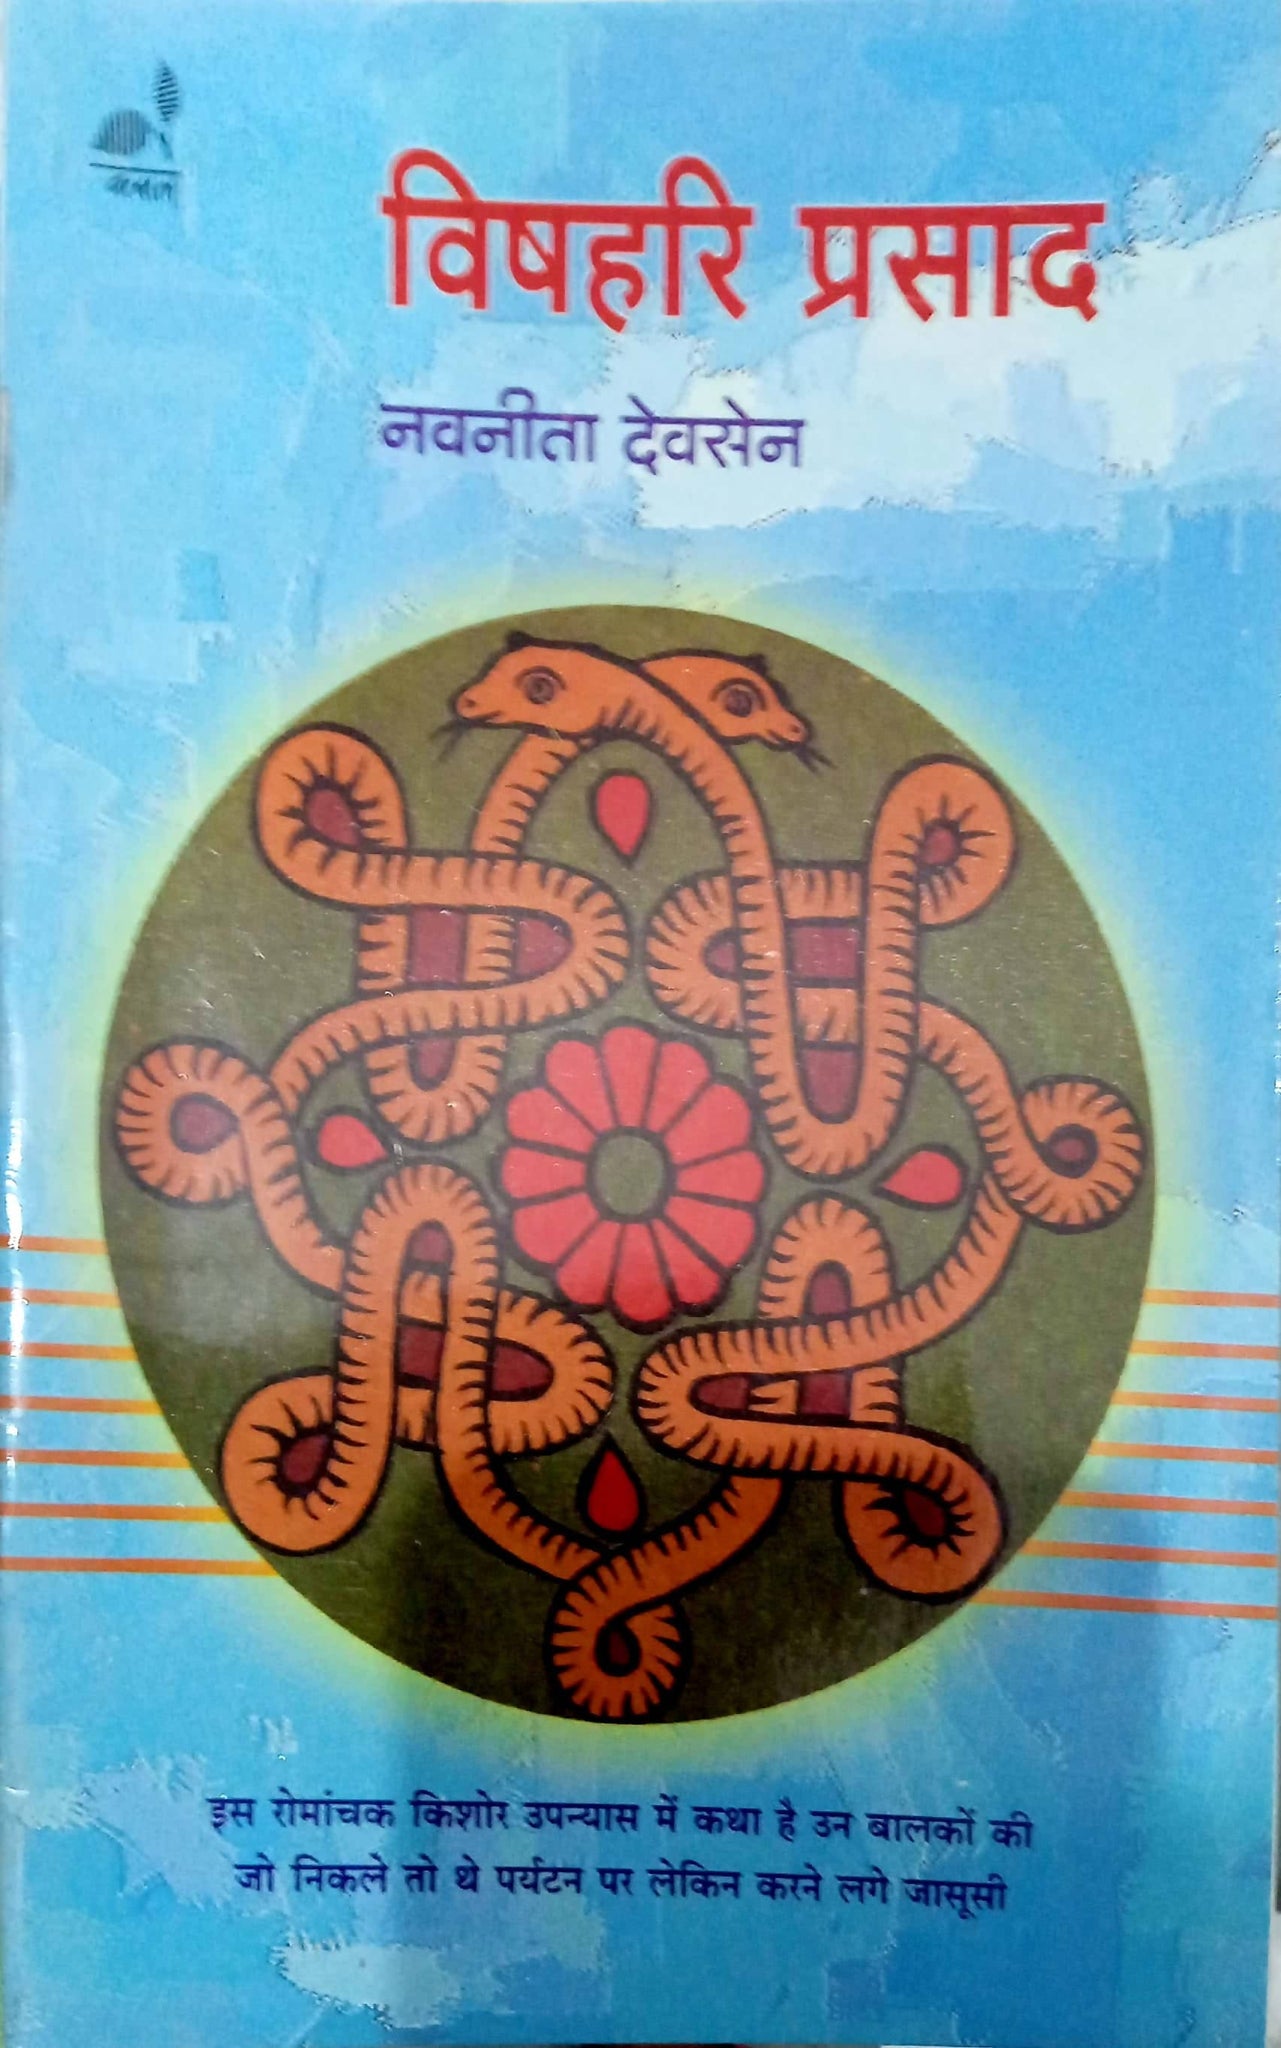 Vishahari prashad